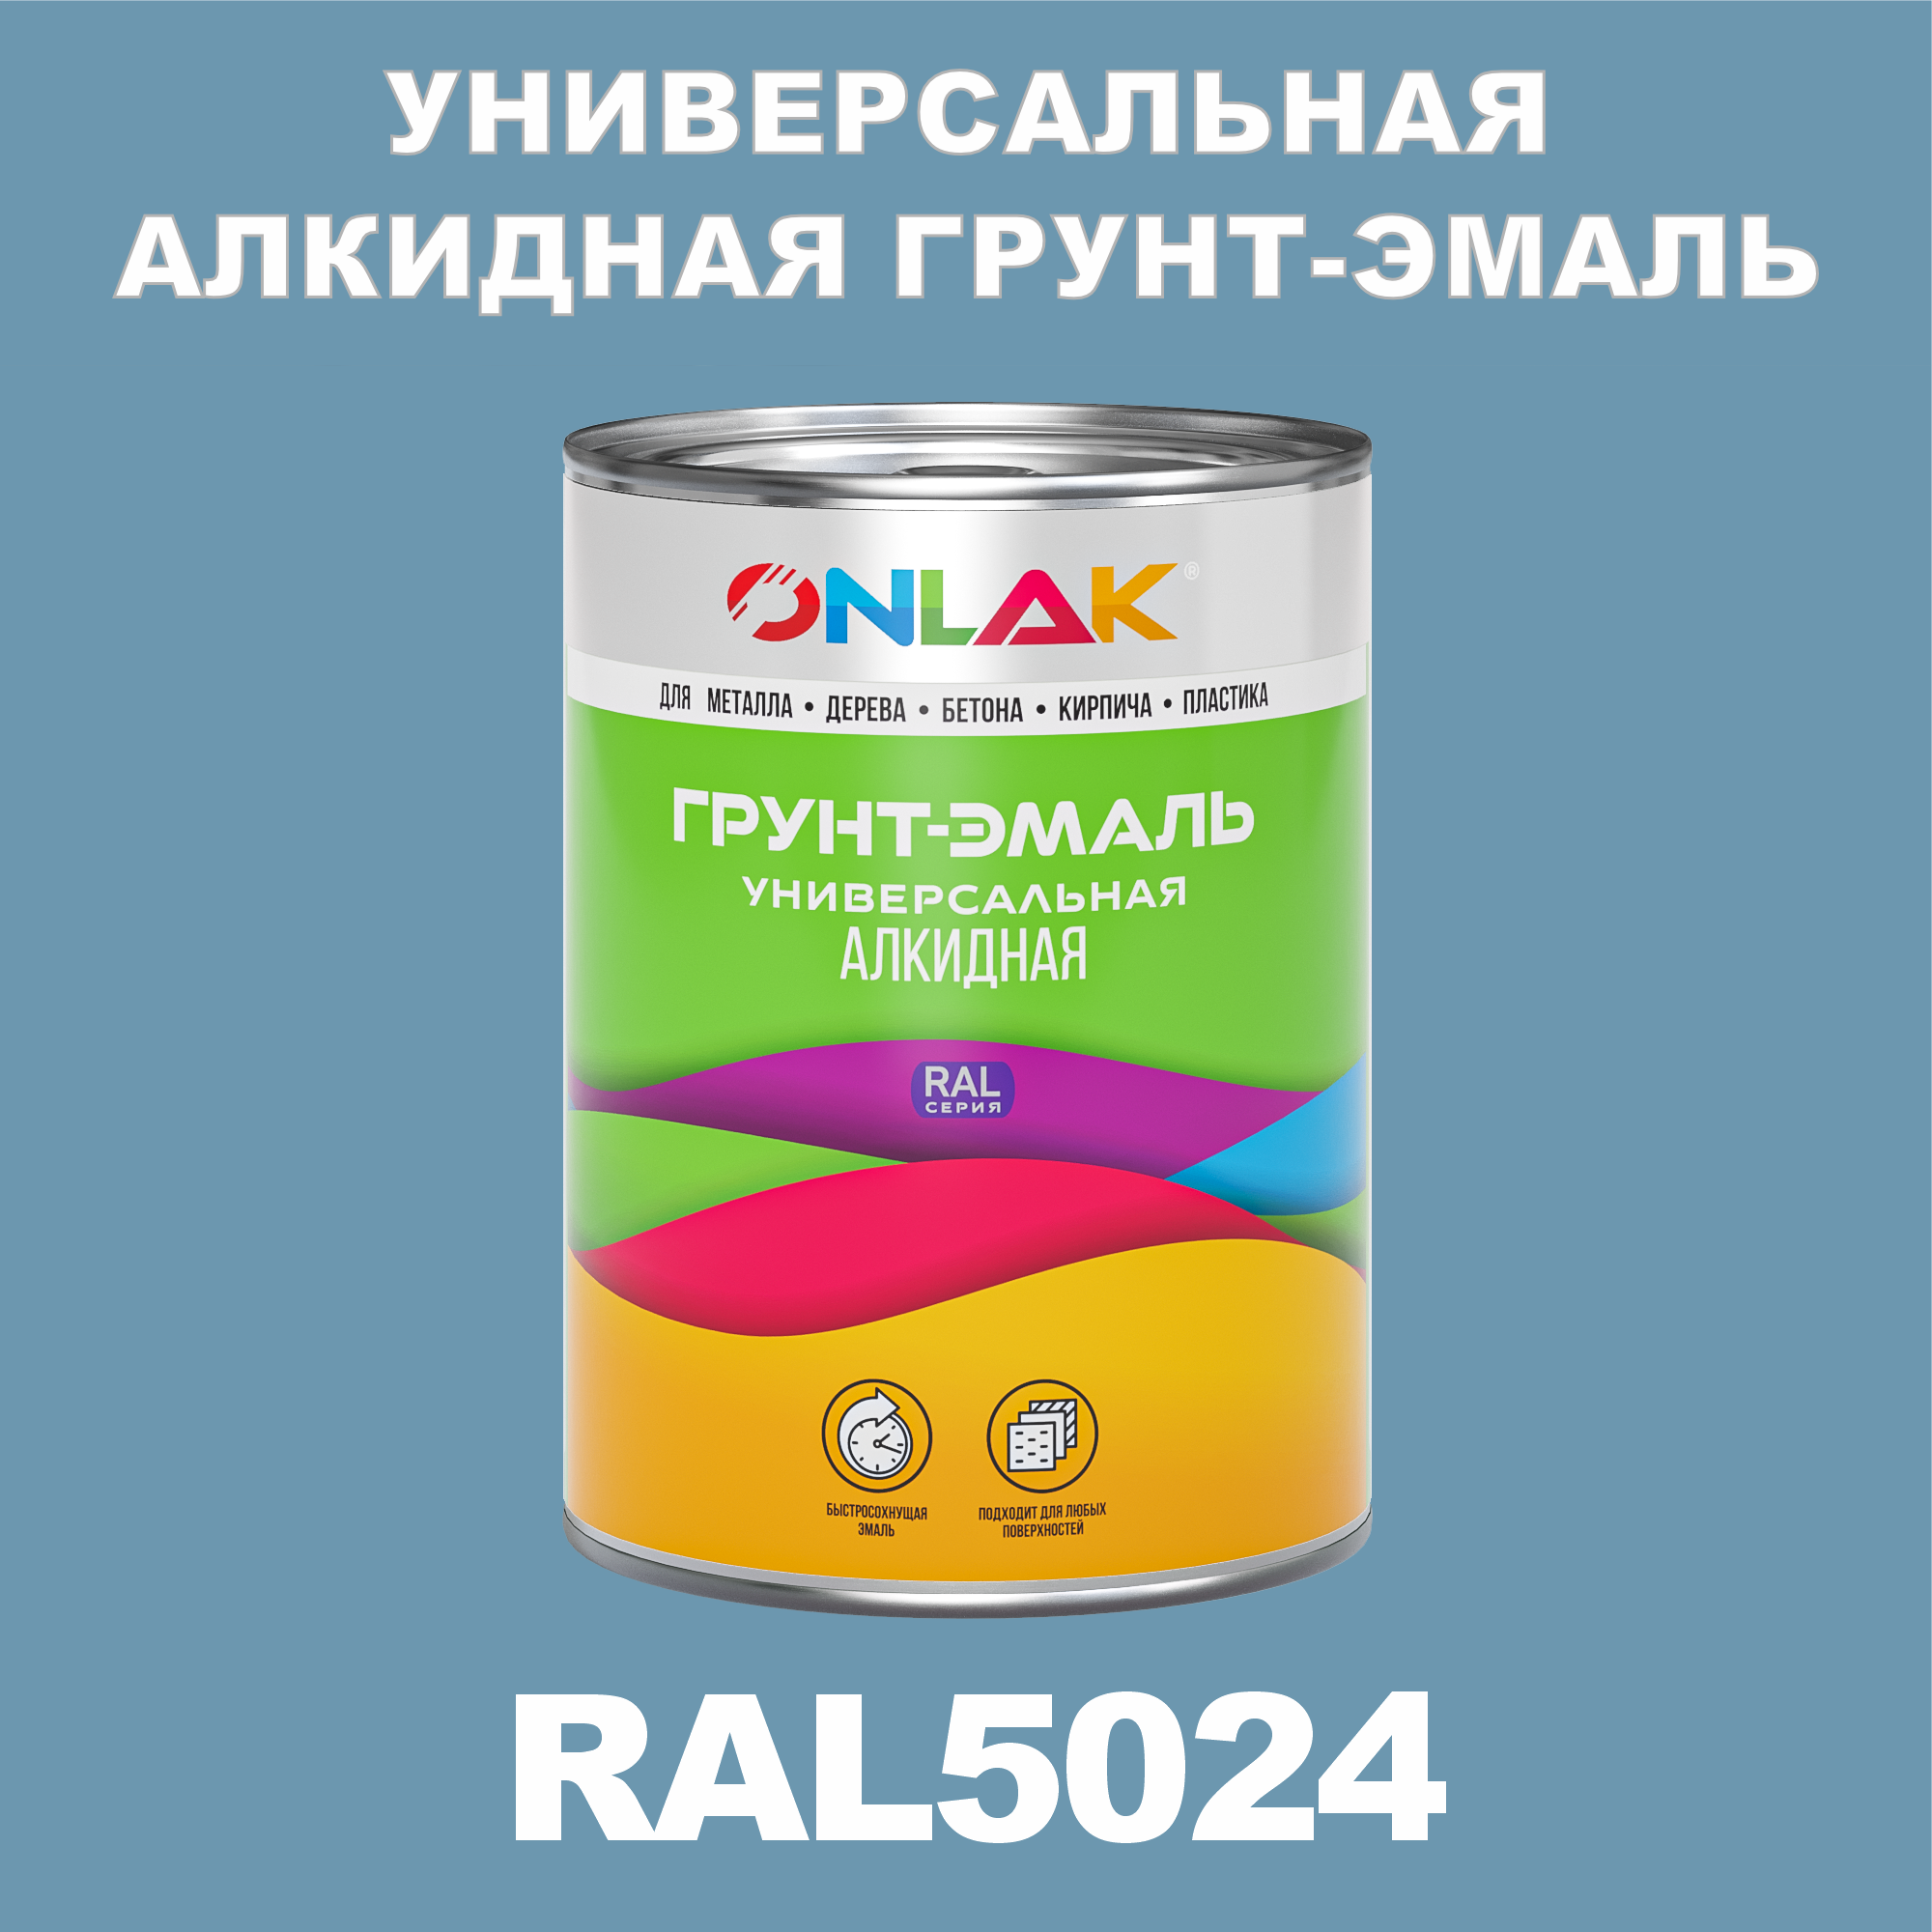 Грунт-эмаль ONLAK 1К RAL5024 антикоррозионная алкидная по металлу по ржавчине 1 кг грунт эмаль yollo по ржавчине алкидная зеленая 0 9 кг